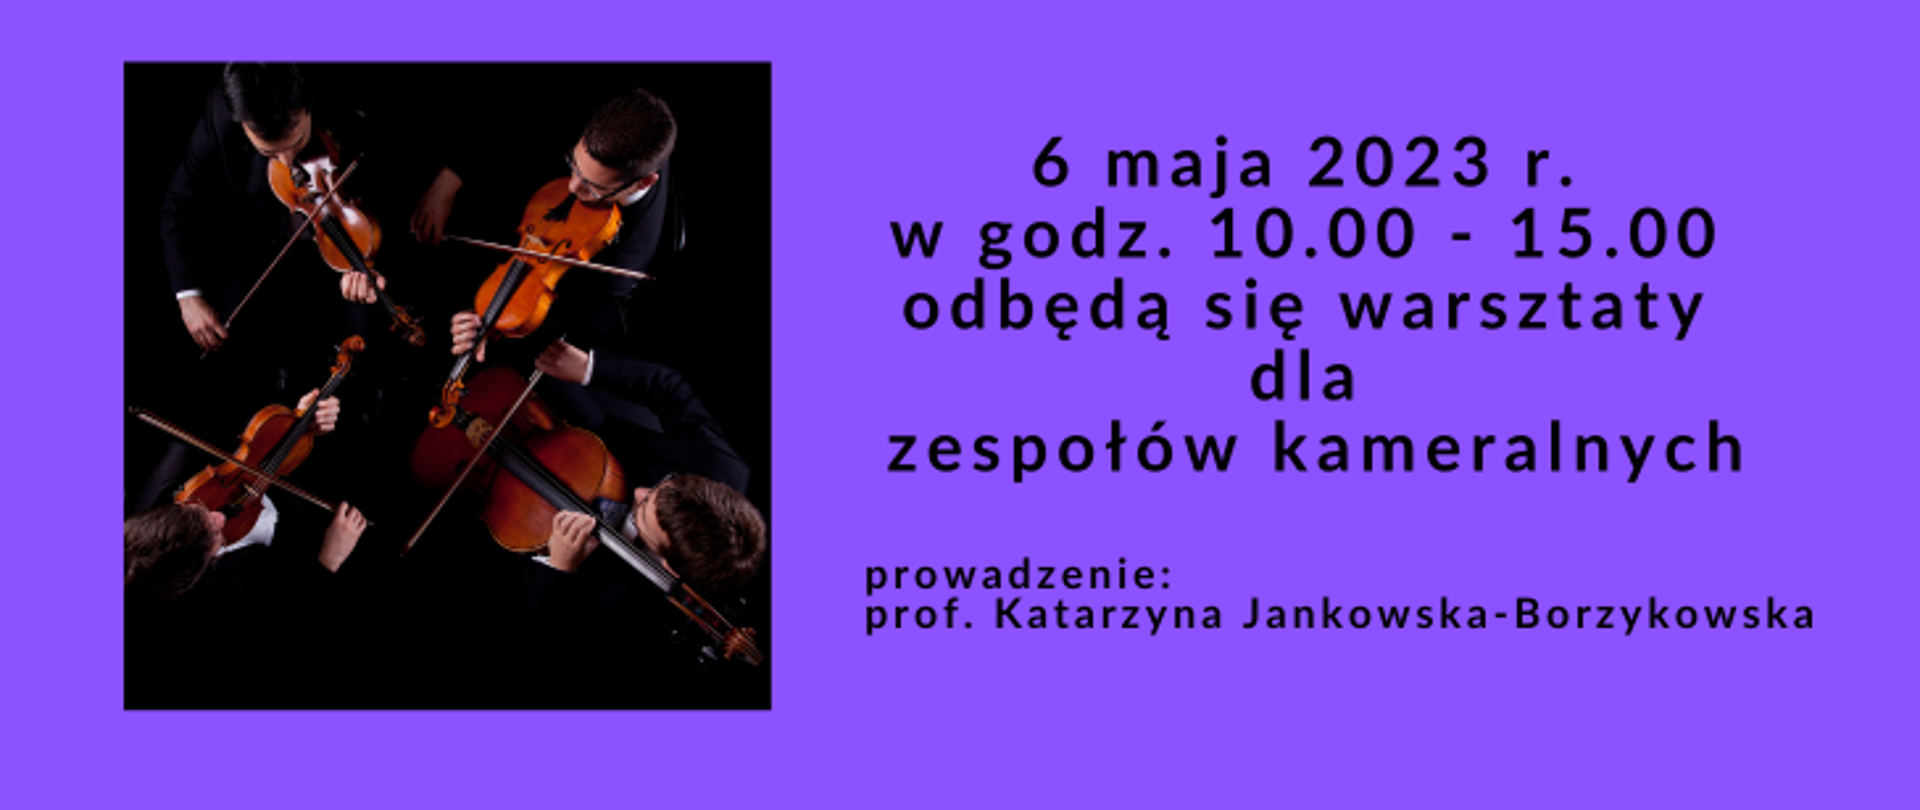 Zdjęcie to ujęcie z góry przedstawiające czterech muzyków kwartetu smyczkowego trzymających instrumenty i grających na nich. Obok informacje, że 6 maja 2023 r. w godz. 10.00 - 15.00 odbędą się warsztaty dla zespołów kameralnych. Prowadzenie: prof. Katarzyna Jankowska-Borzykowska